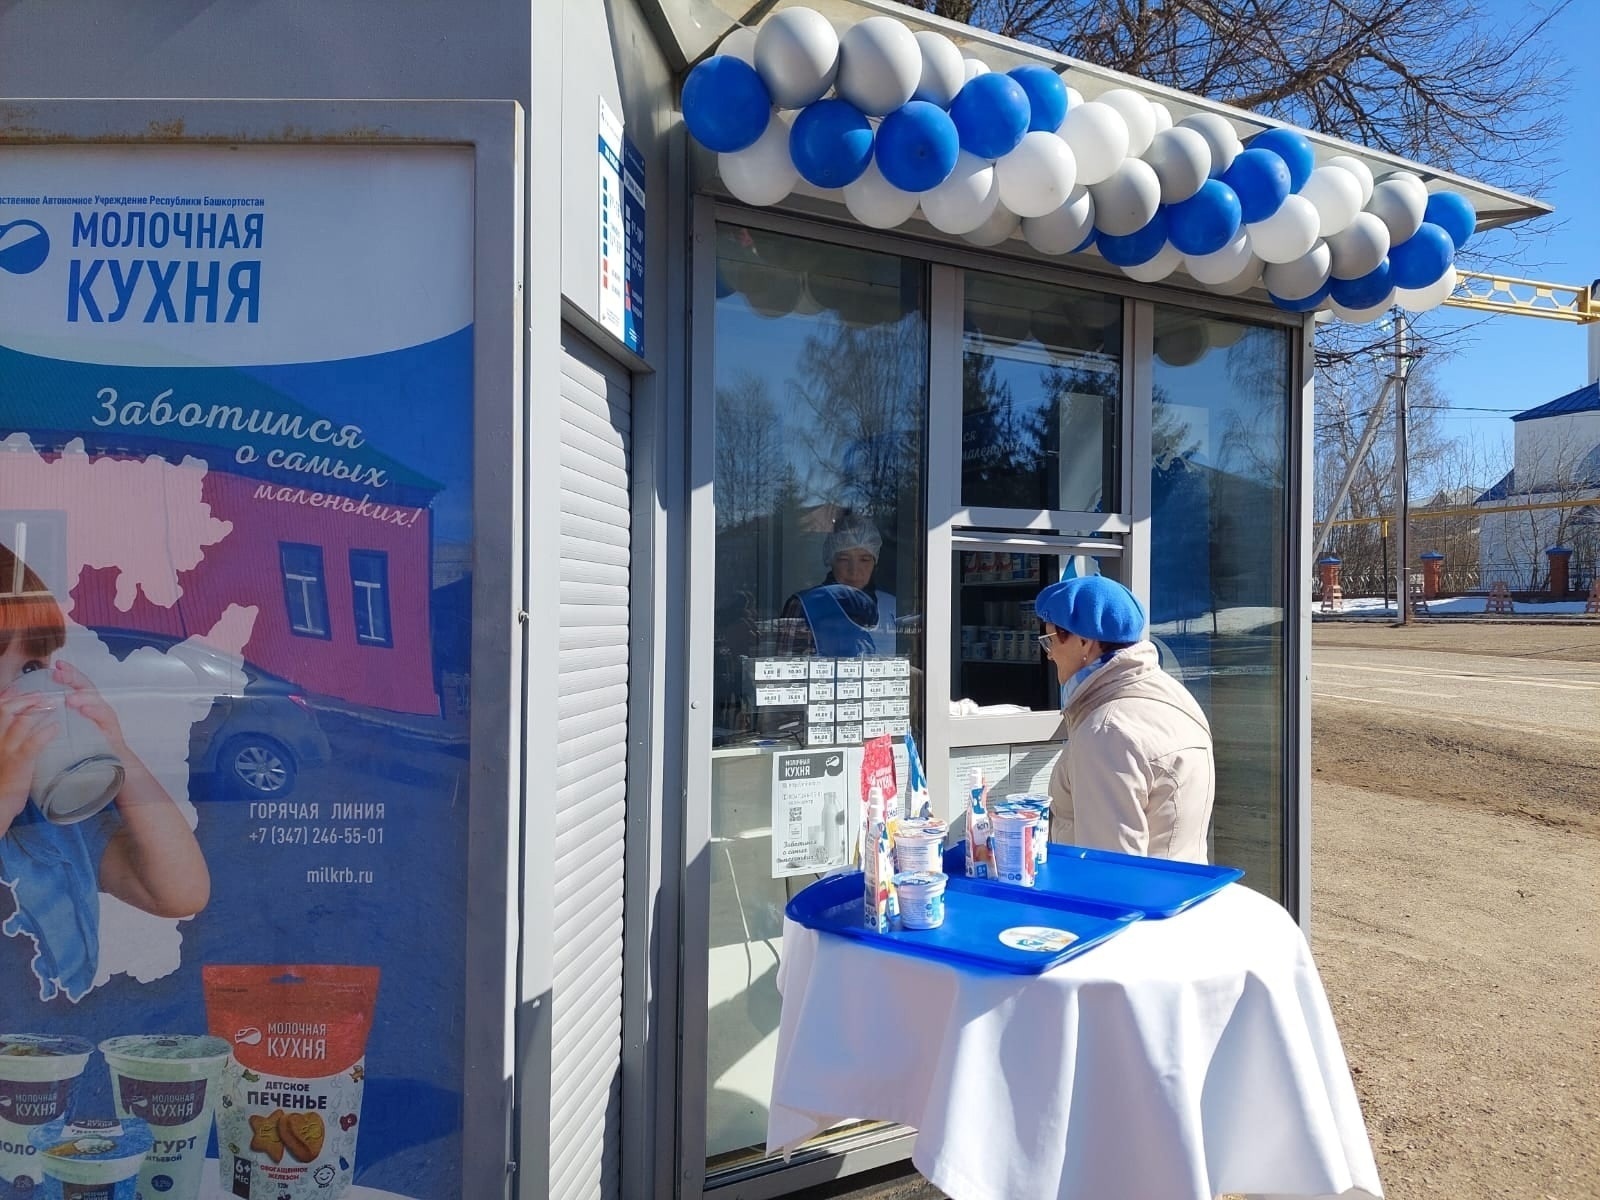 В Башкирии открыли новые пункты бесплатной выдачи «Молочной кухни»